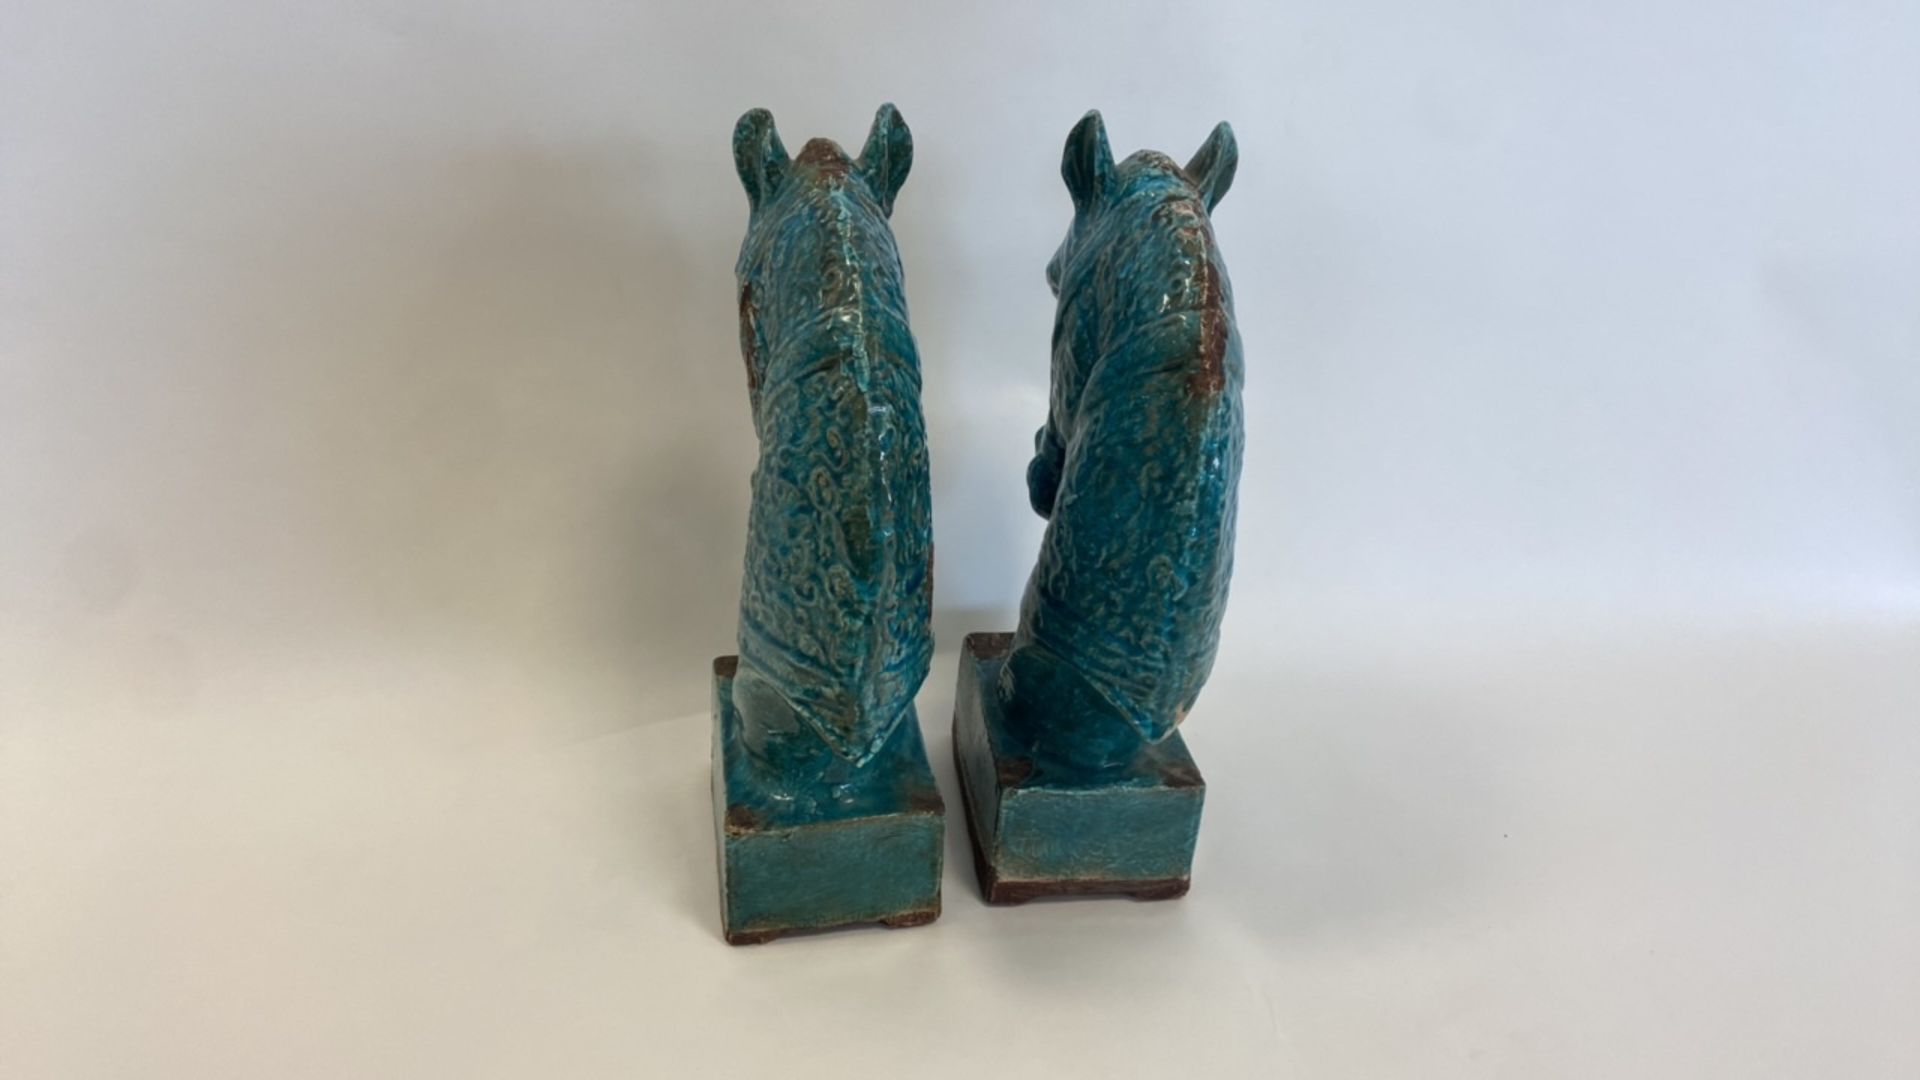 Antique, Handmade Ceramic Horse Statue - Image 4 of 8